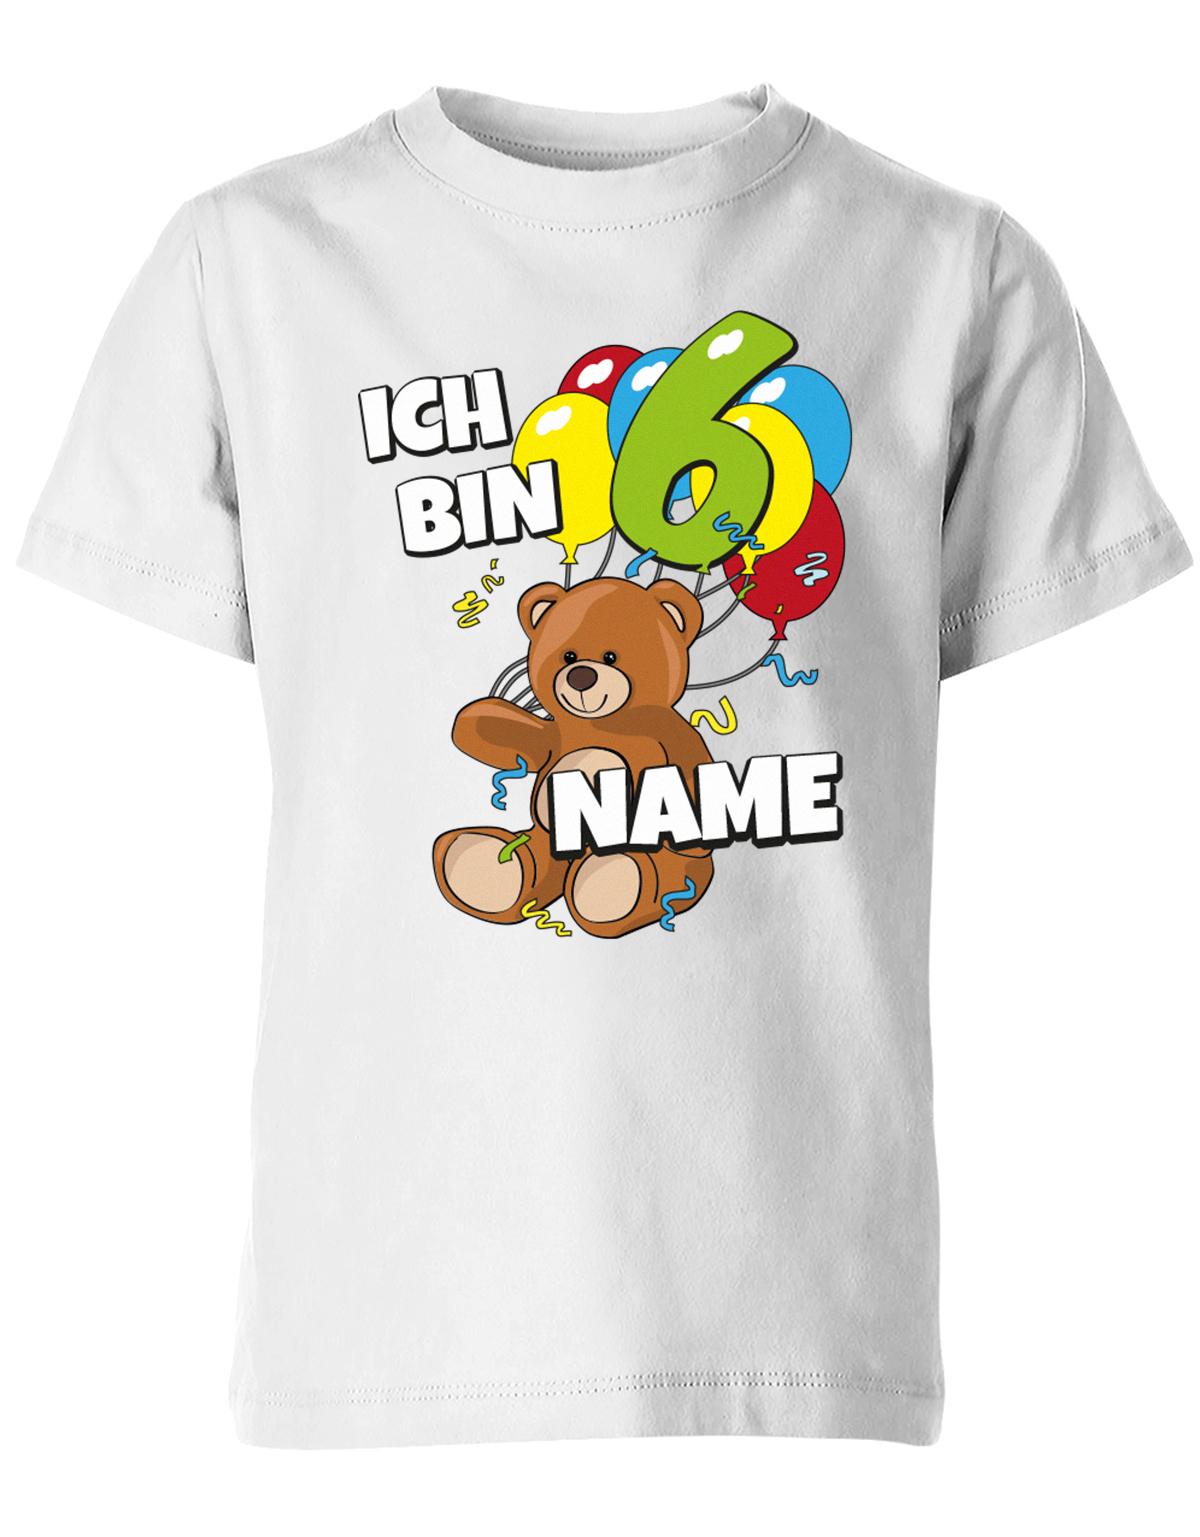 ich-bin-6-teddy-luftballons-kinder-shirt-weiss